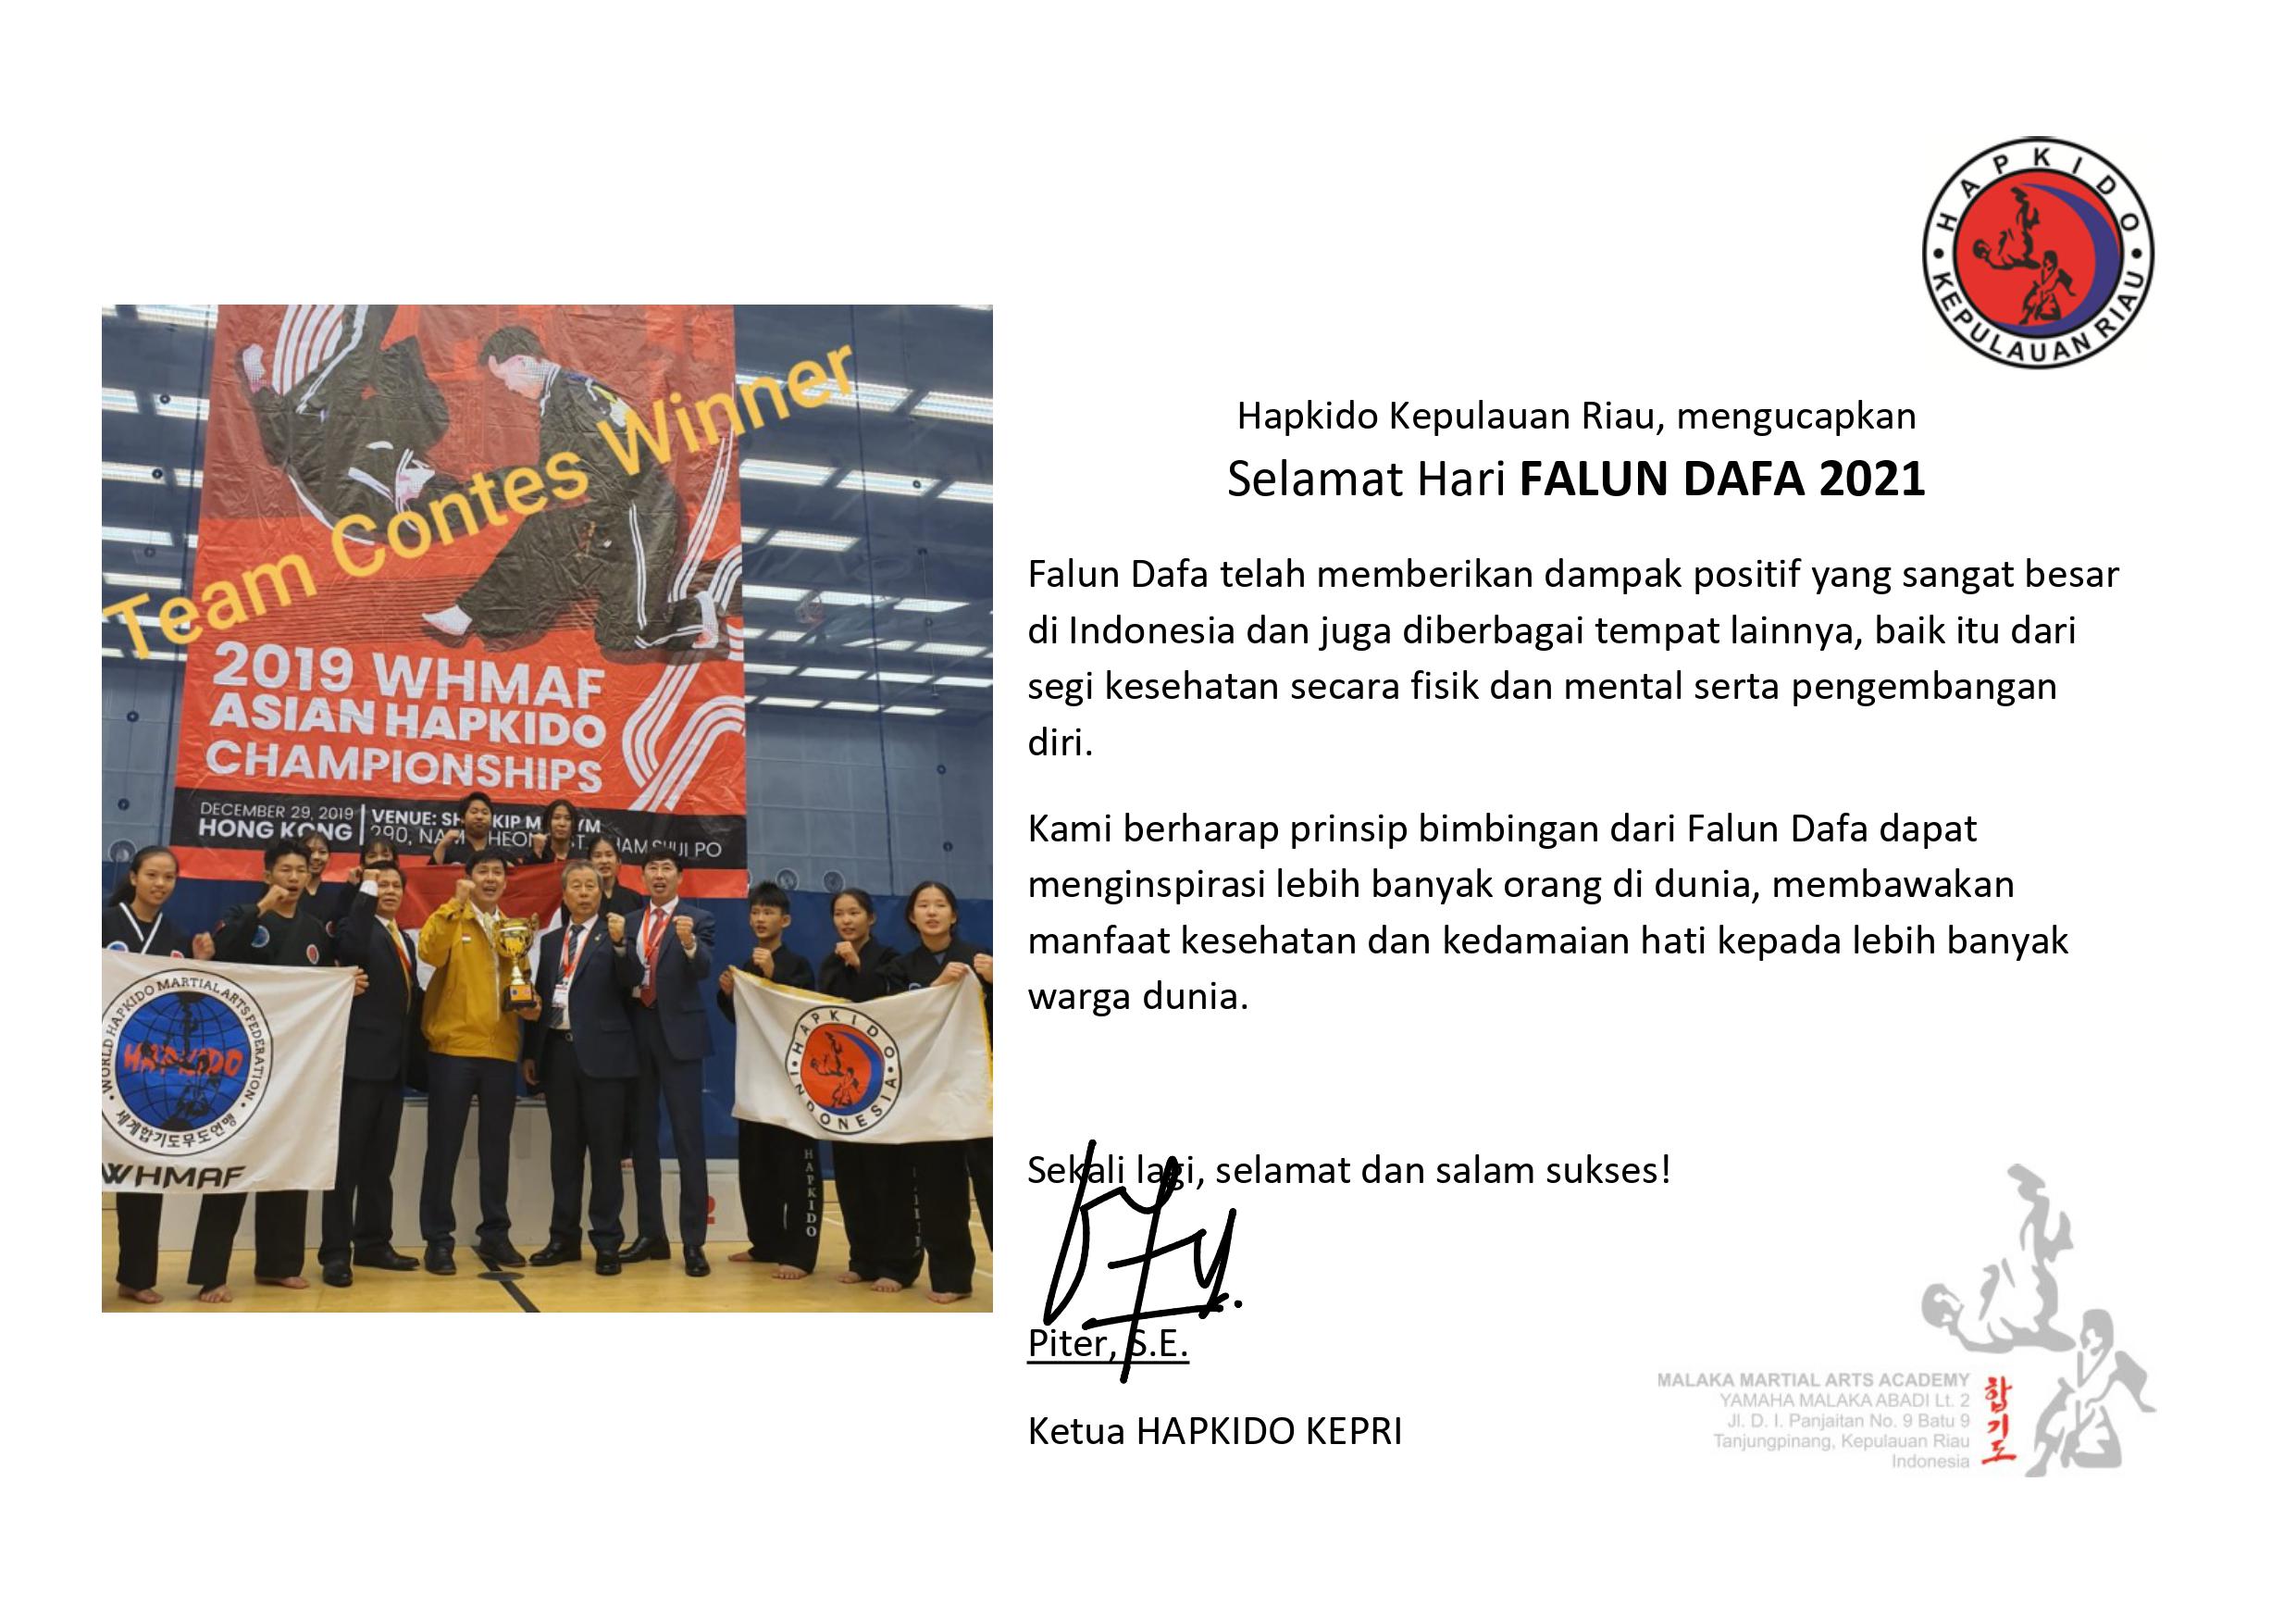 Image for article Batam: Ketua Hapkido Provinsi Kepulauan Riau Mengucapkan Selamat Hari Falun Dafa 2021